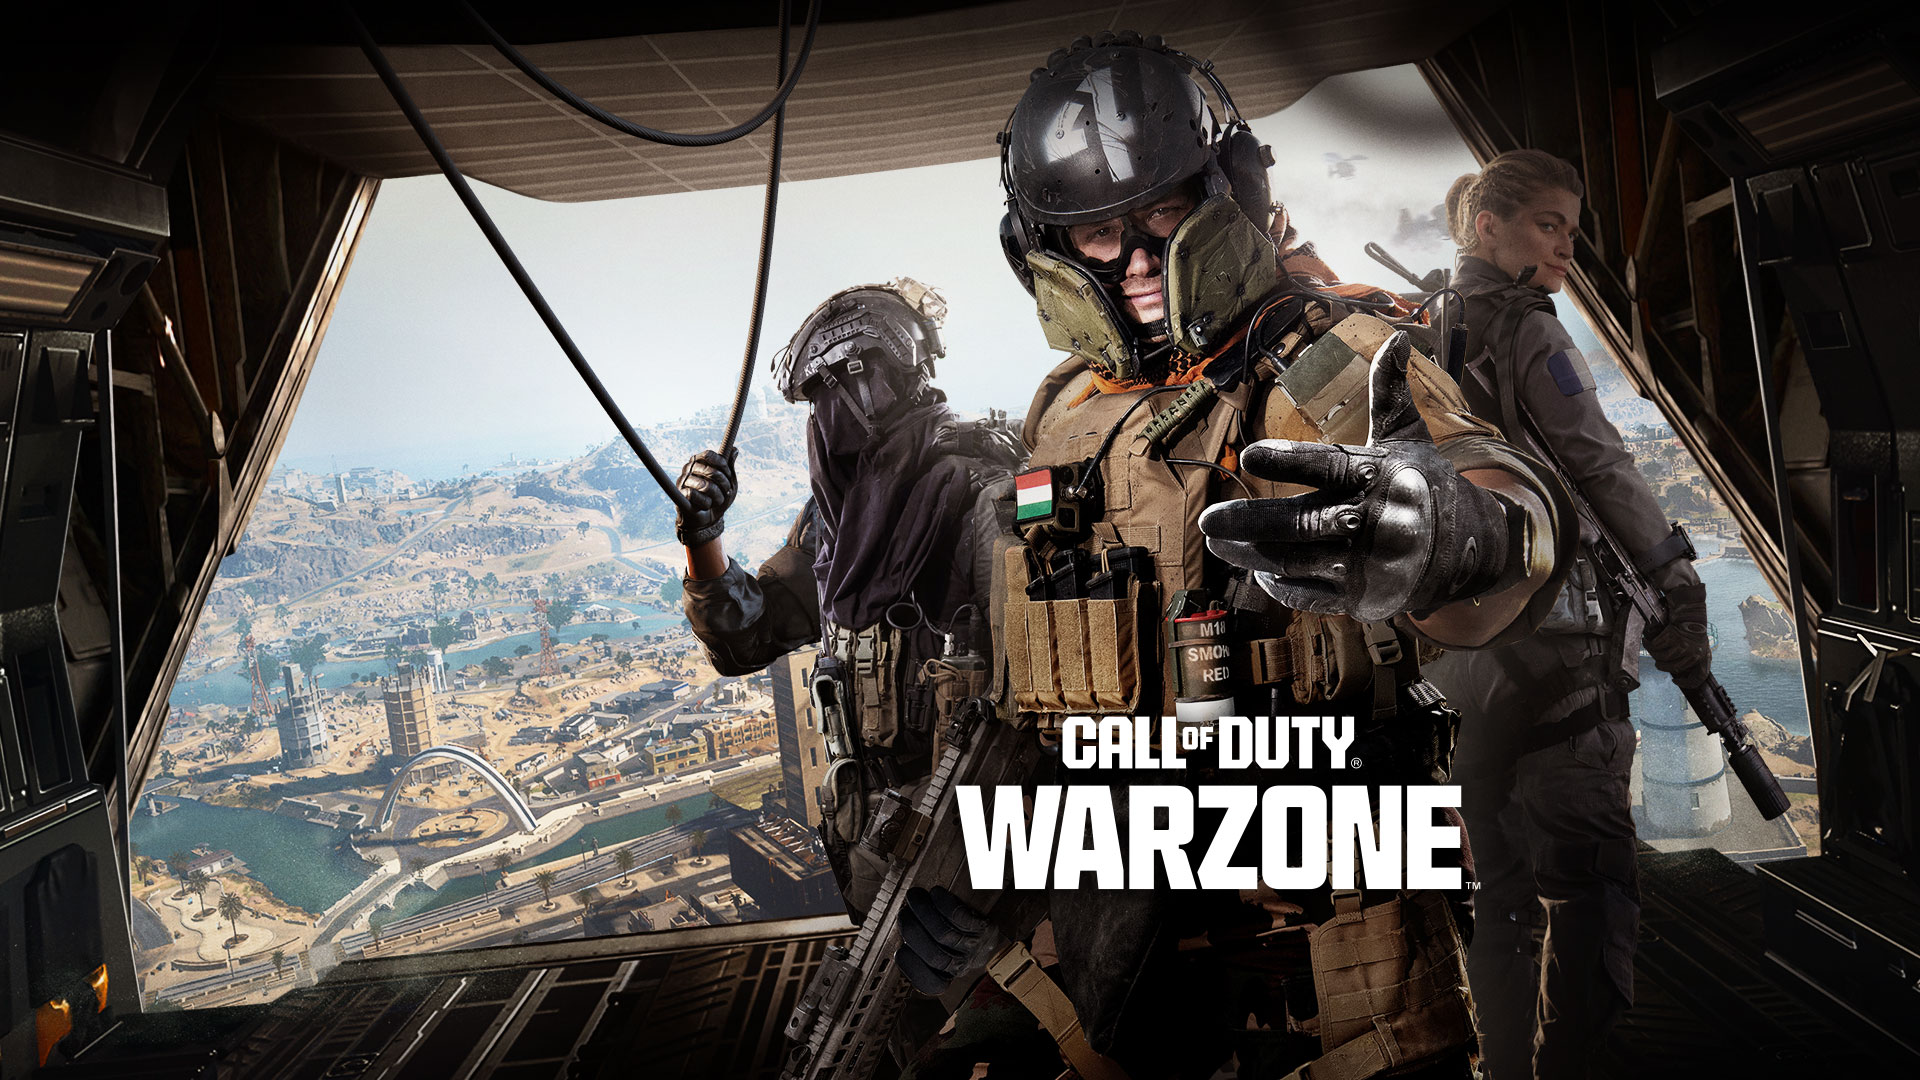 Call of Duty Warzone, in piedi sul retro di un aereo da trasporto, un trio di Operatori ti invita a partecipare all'azione.